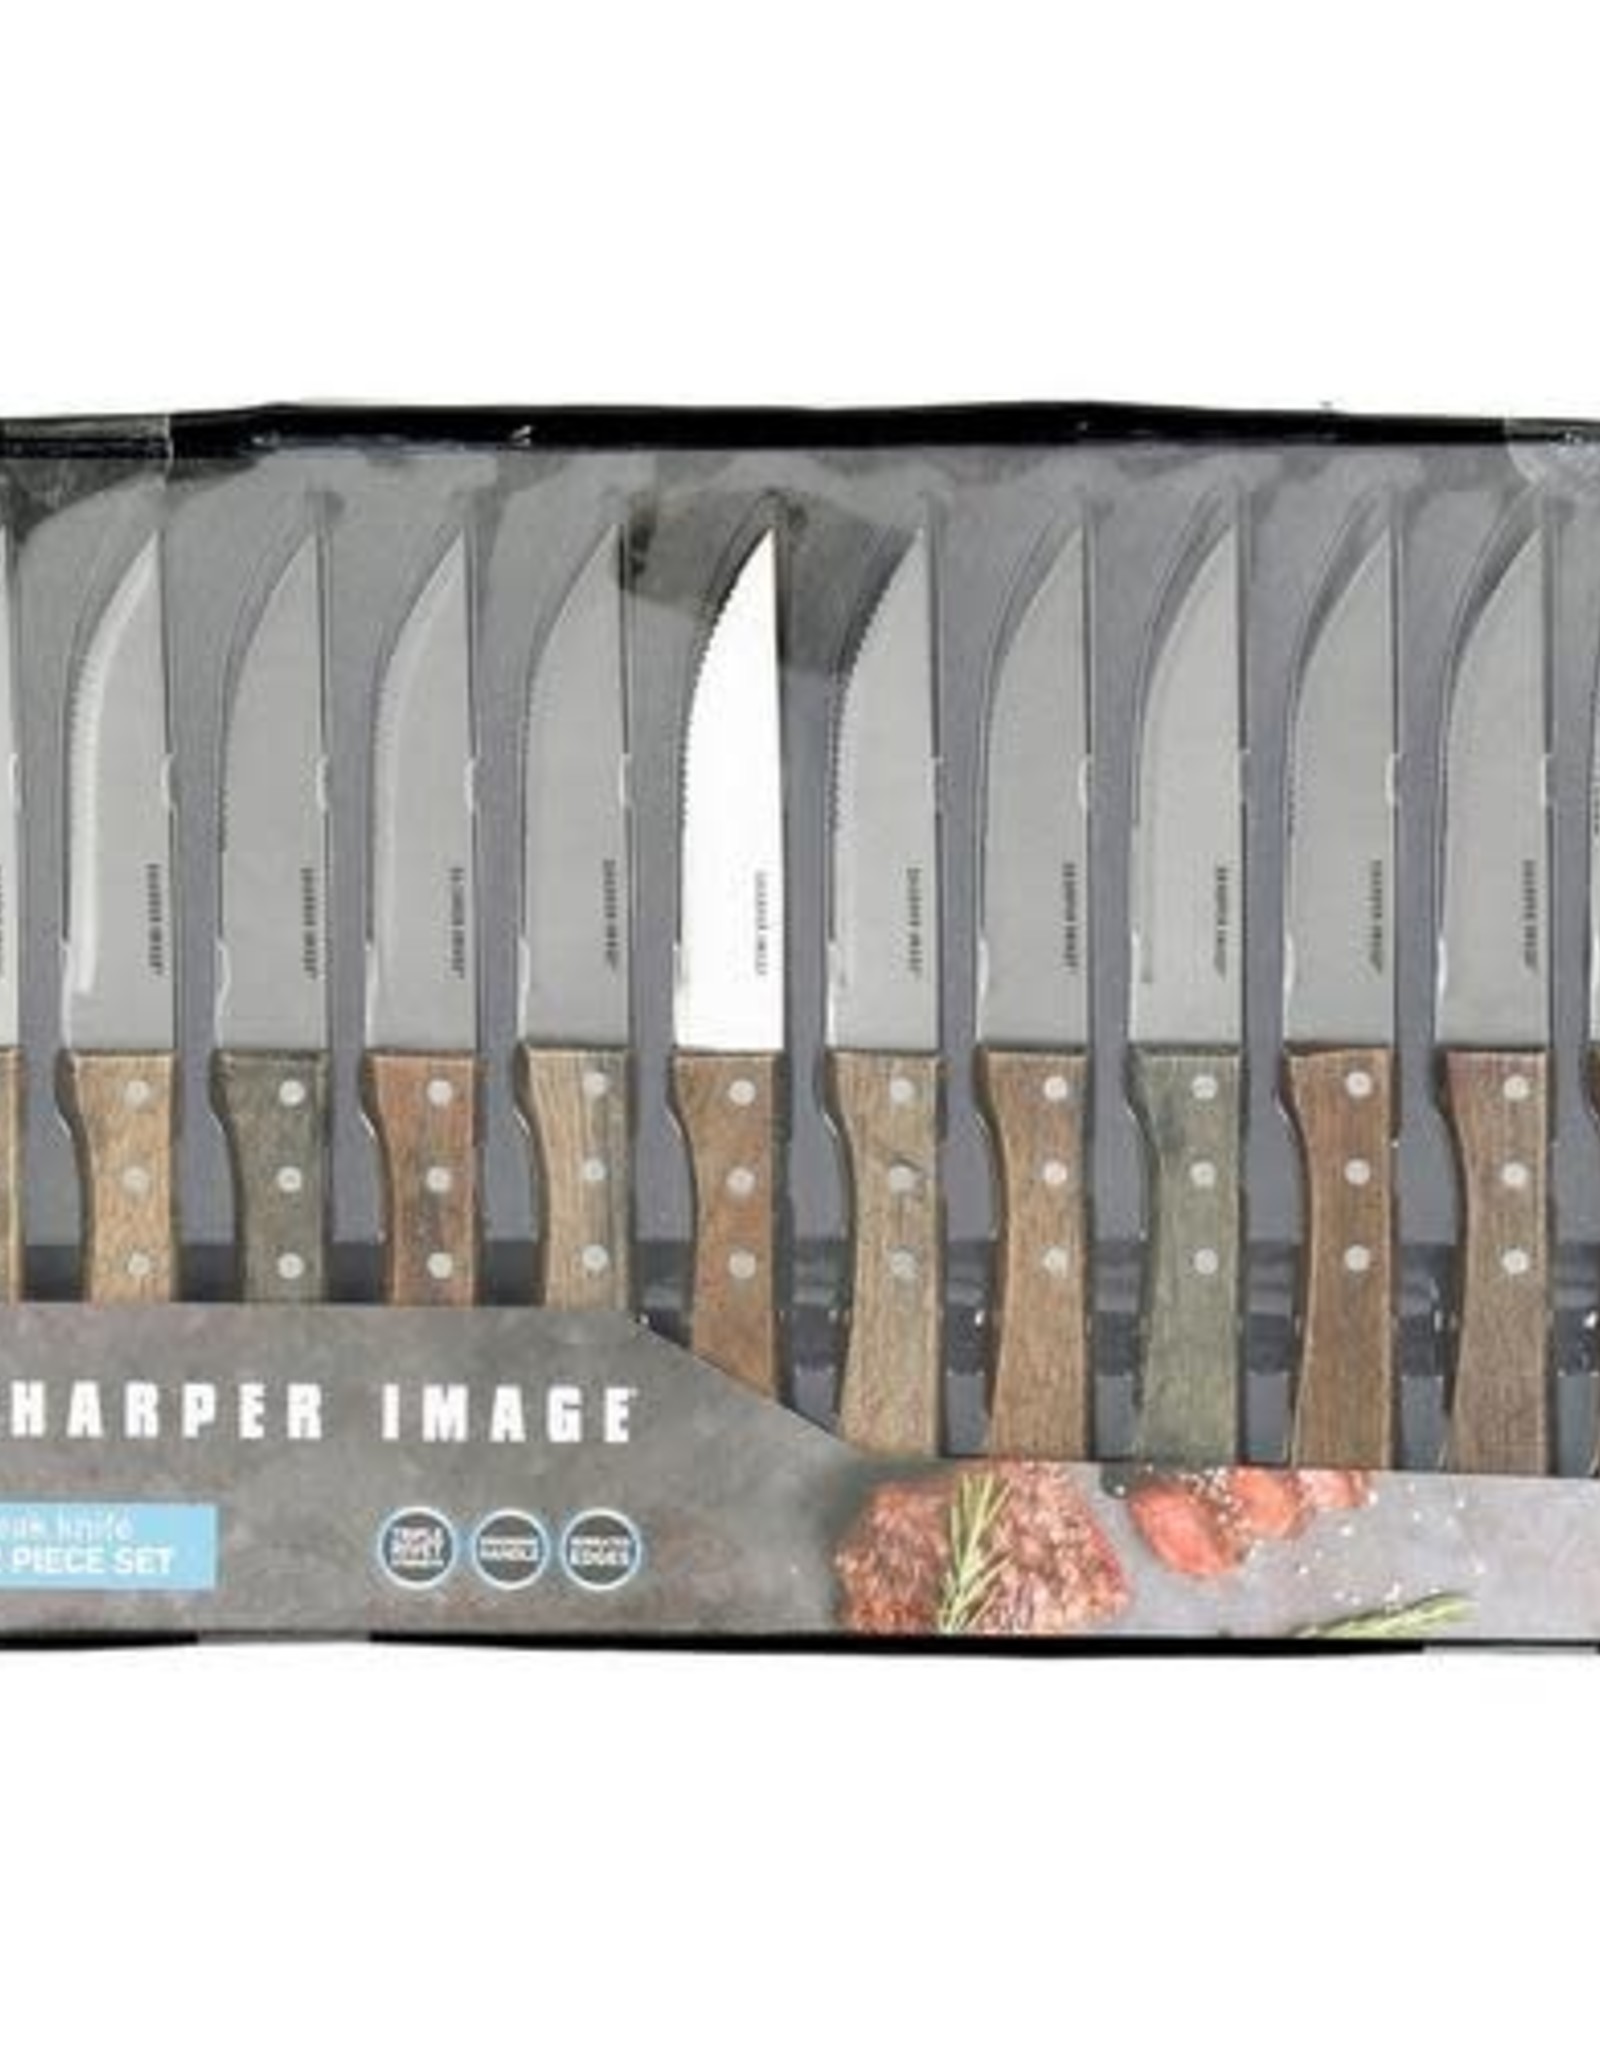 Sharper Image Sharper Image 12 set Steak Knives - Level Up Appliances & More